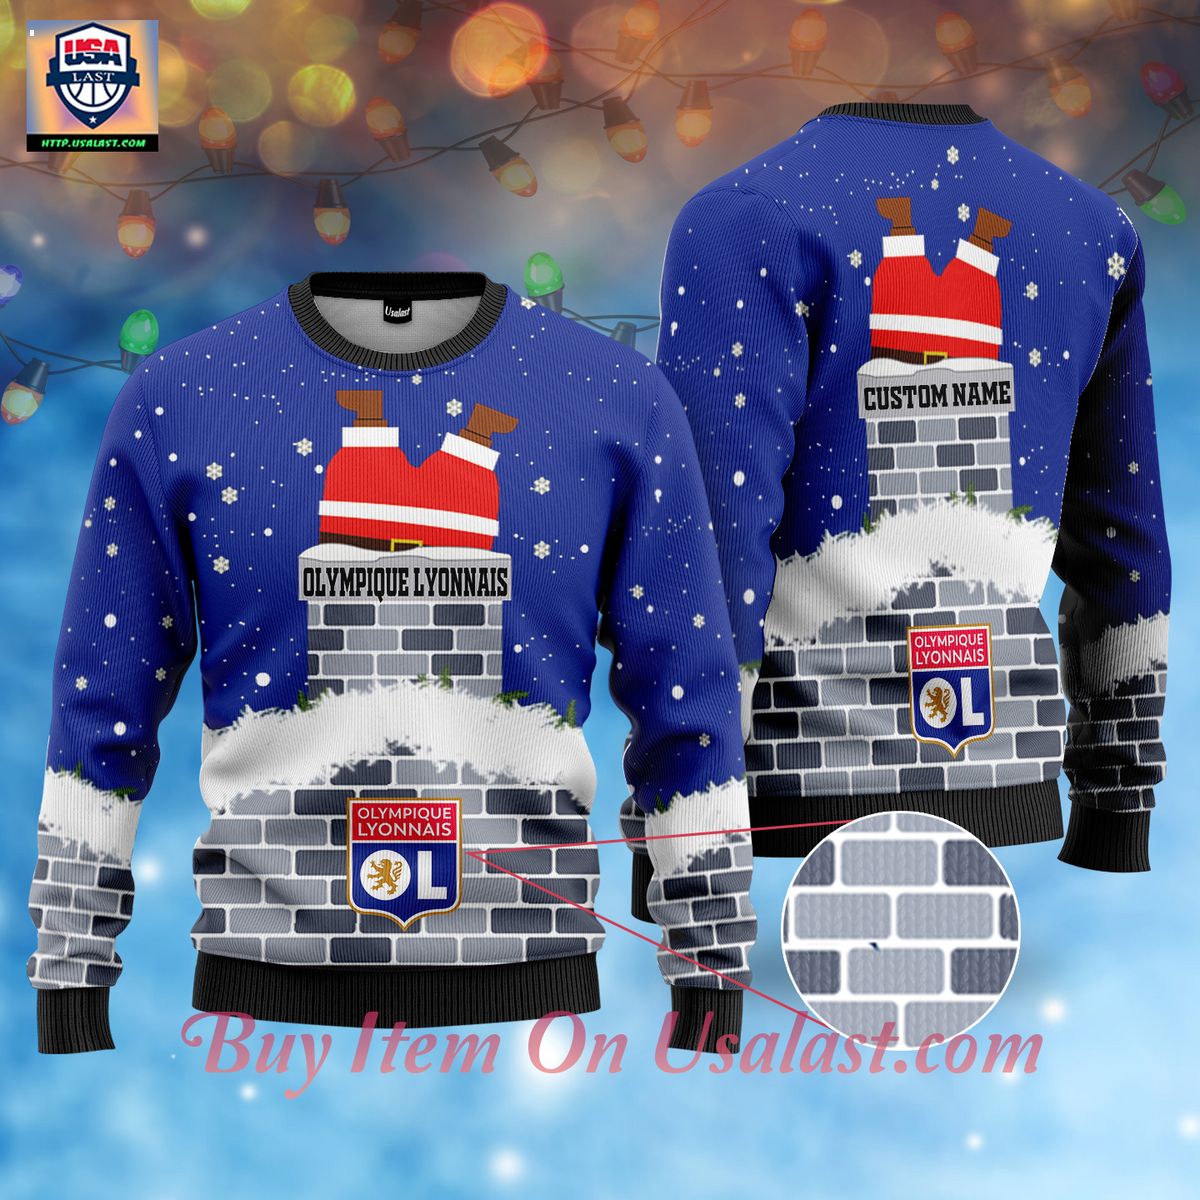 olympique-lyonnais-santa-claus-custom-name-ugly-christmas-sweater-1-3xmEp.jpg